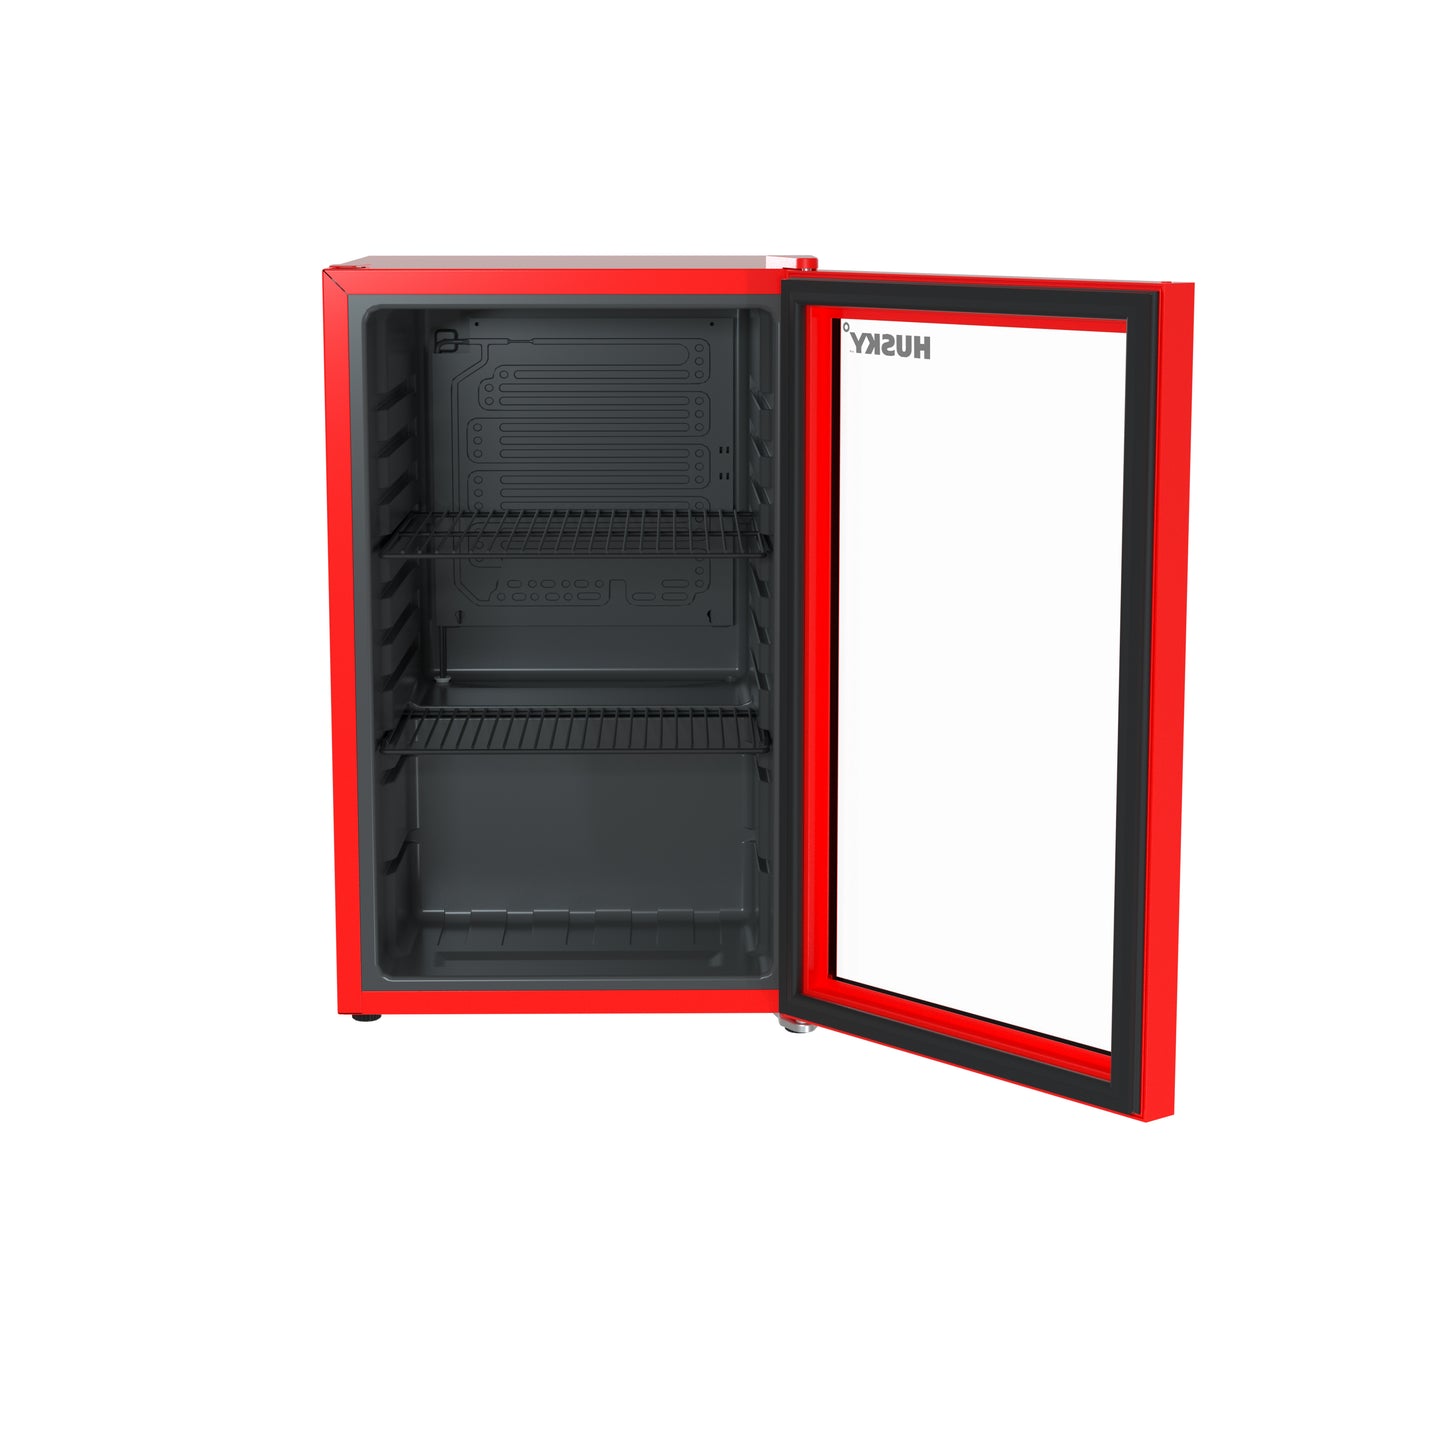 Husky 69L Beverage Refrigerator 2.4 C.ft. Freestanding Mini Fridge With Glass Door in Red